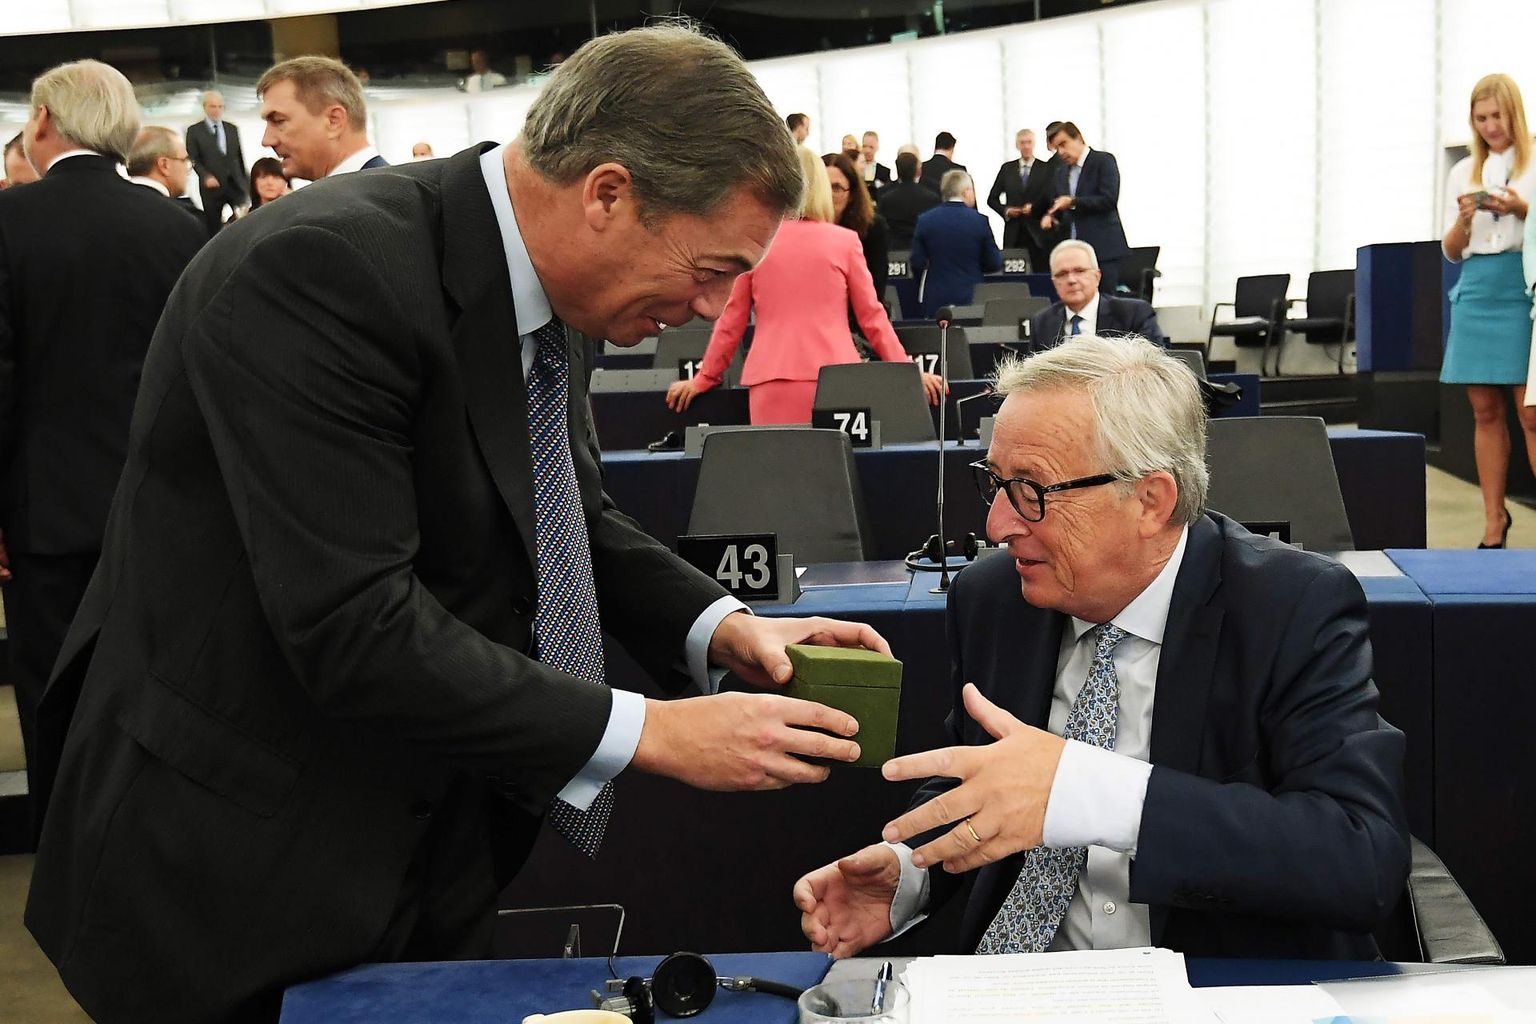 Kuigi debati vältel vahetasid staareuroskeptik Nigel Farage ja Euroopa Komisjoni president Jean-Claude Juncker teravusi, oli neil enne seda helgem hetk, kui oma viimase ELi üldolukorda puudutava kõne pidanud Juncker sai britilt kingituse.